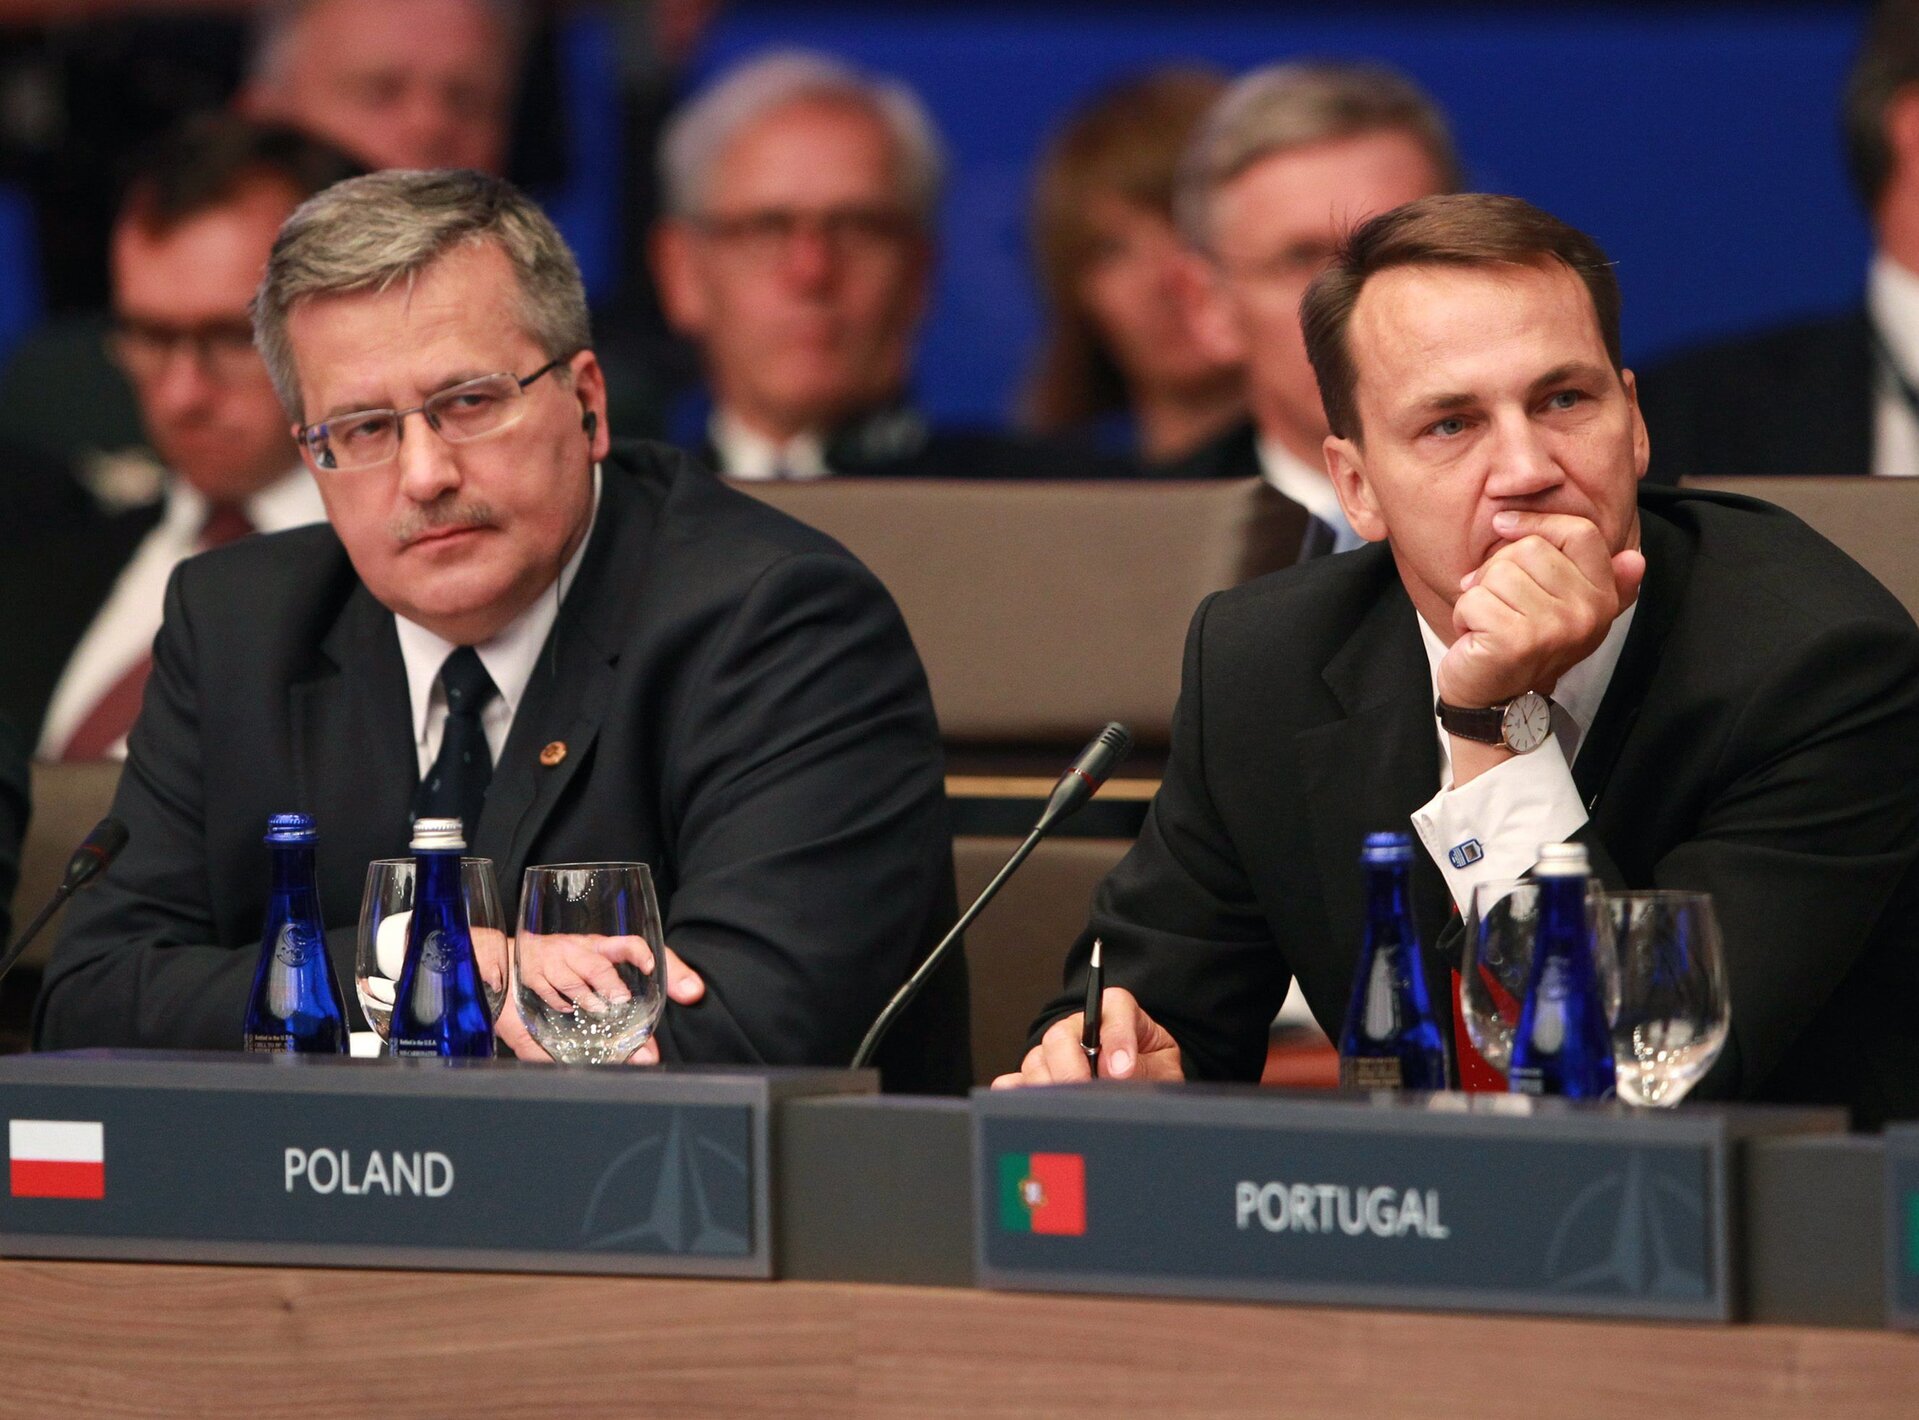 Zdjęcie przedstawia Prezydenta Bronisława Komorowskiego wraz z Ministrem Spraw Zagranicznych Radosławem Sikorskim. Siedzą wspólnie na międzynarodowym posiedzeniu. Przed nimi stoją tabliczki z opisami krajów: POLAND i PORTUGAL. W tle liczni politycy. 